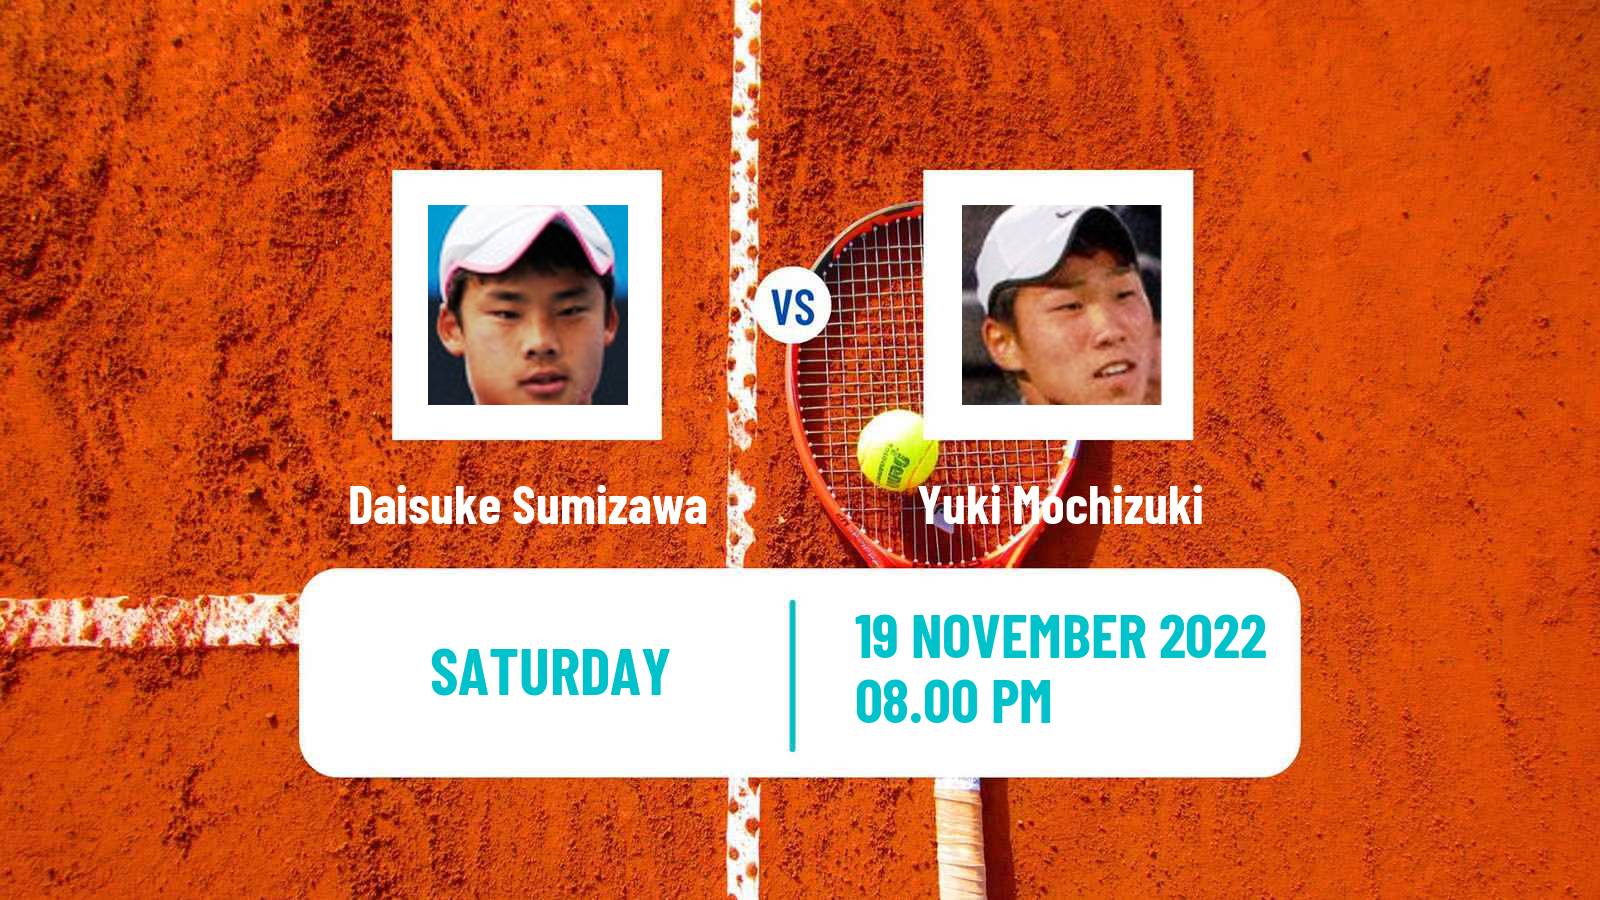 Tennis ATP Challenger Daisuke Sumizawa - Yuki Mochizuki